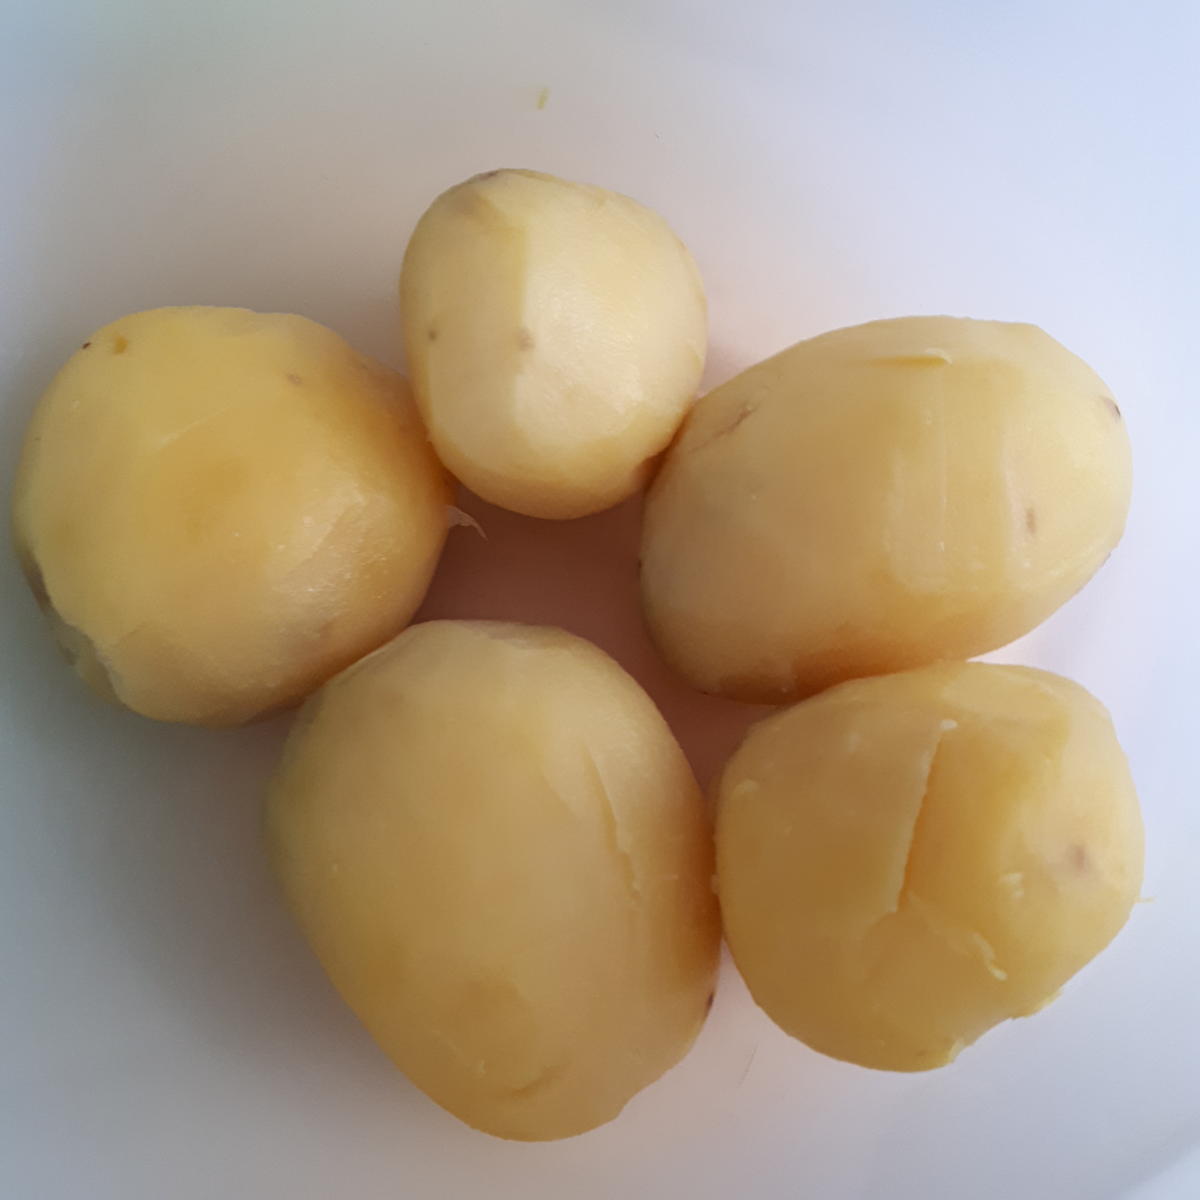 indisch: Malai Kofta - Kartoffel-Käse Bällchen in pikanter Soße - Rezept - Bild Nr. 5625